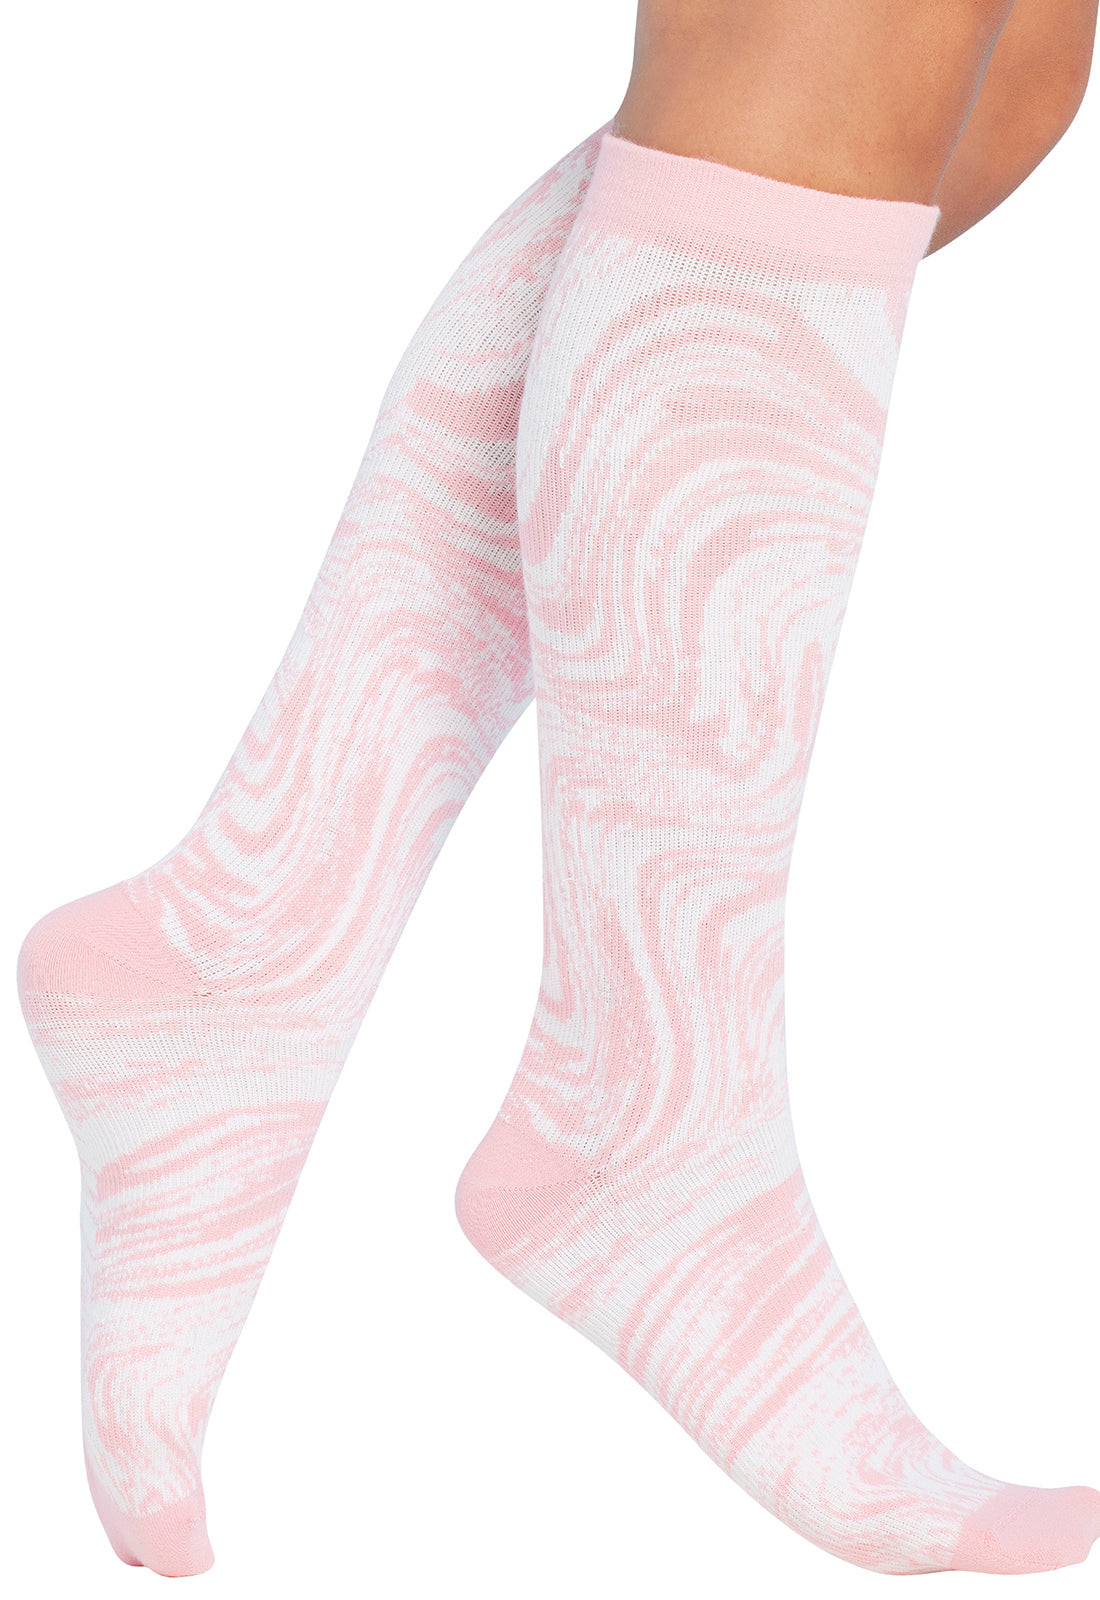 Plus Size Fit - Compression Socks 10-15mmHg Compression Socks Cherokee Legwear Tonal Waves  